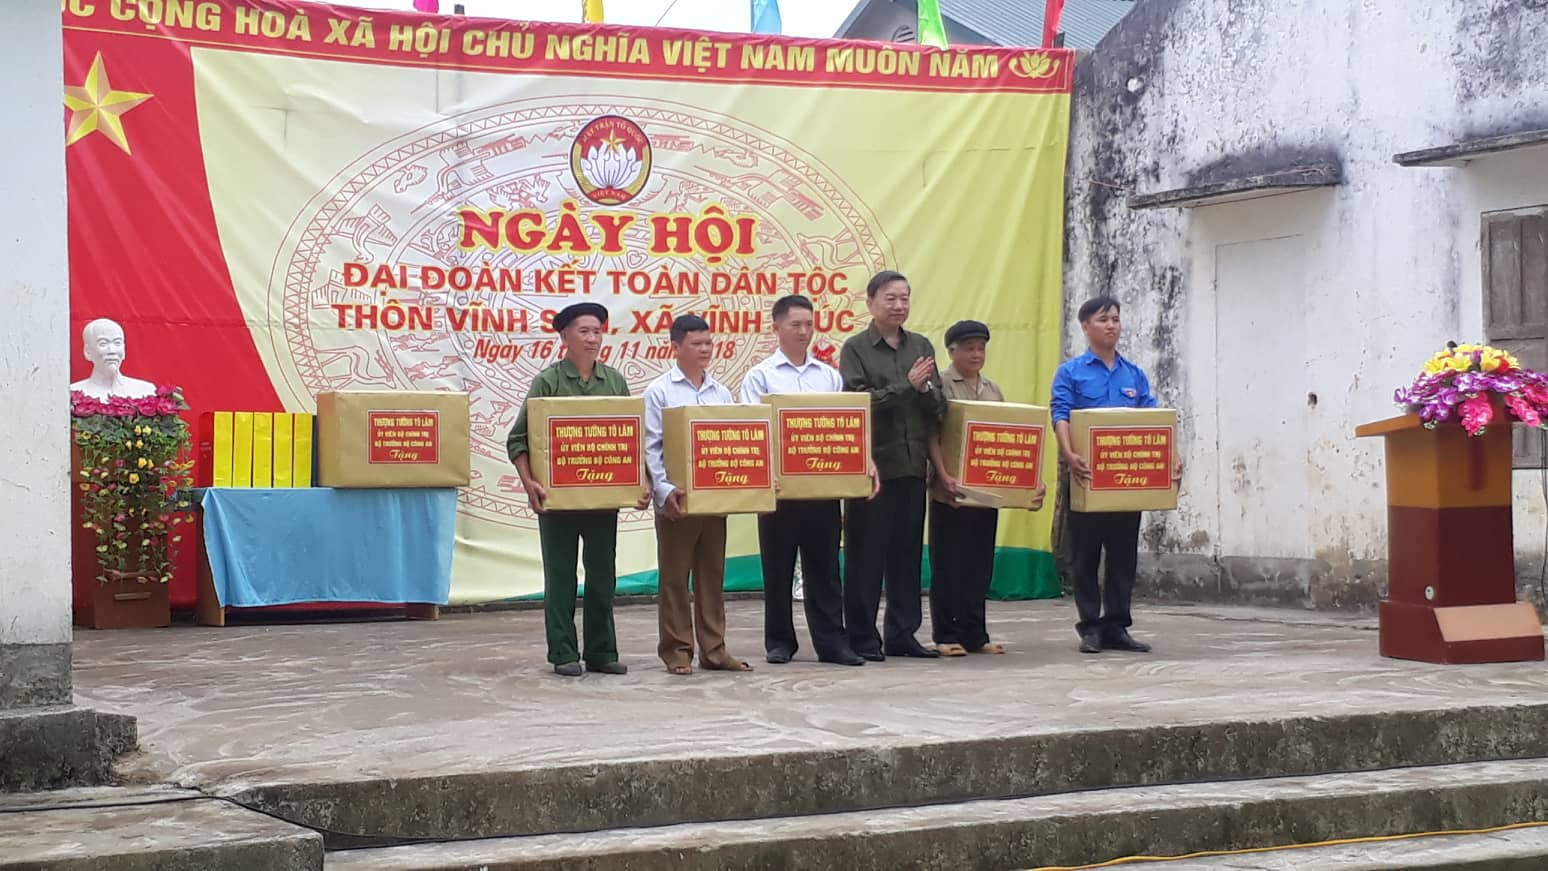 Bộ trưởng bộ công an Tô Lâm đến dự ngày hội đại đoàn kết với thôn Vĩnh Sơn, xã Vĩnh Phúc